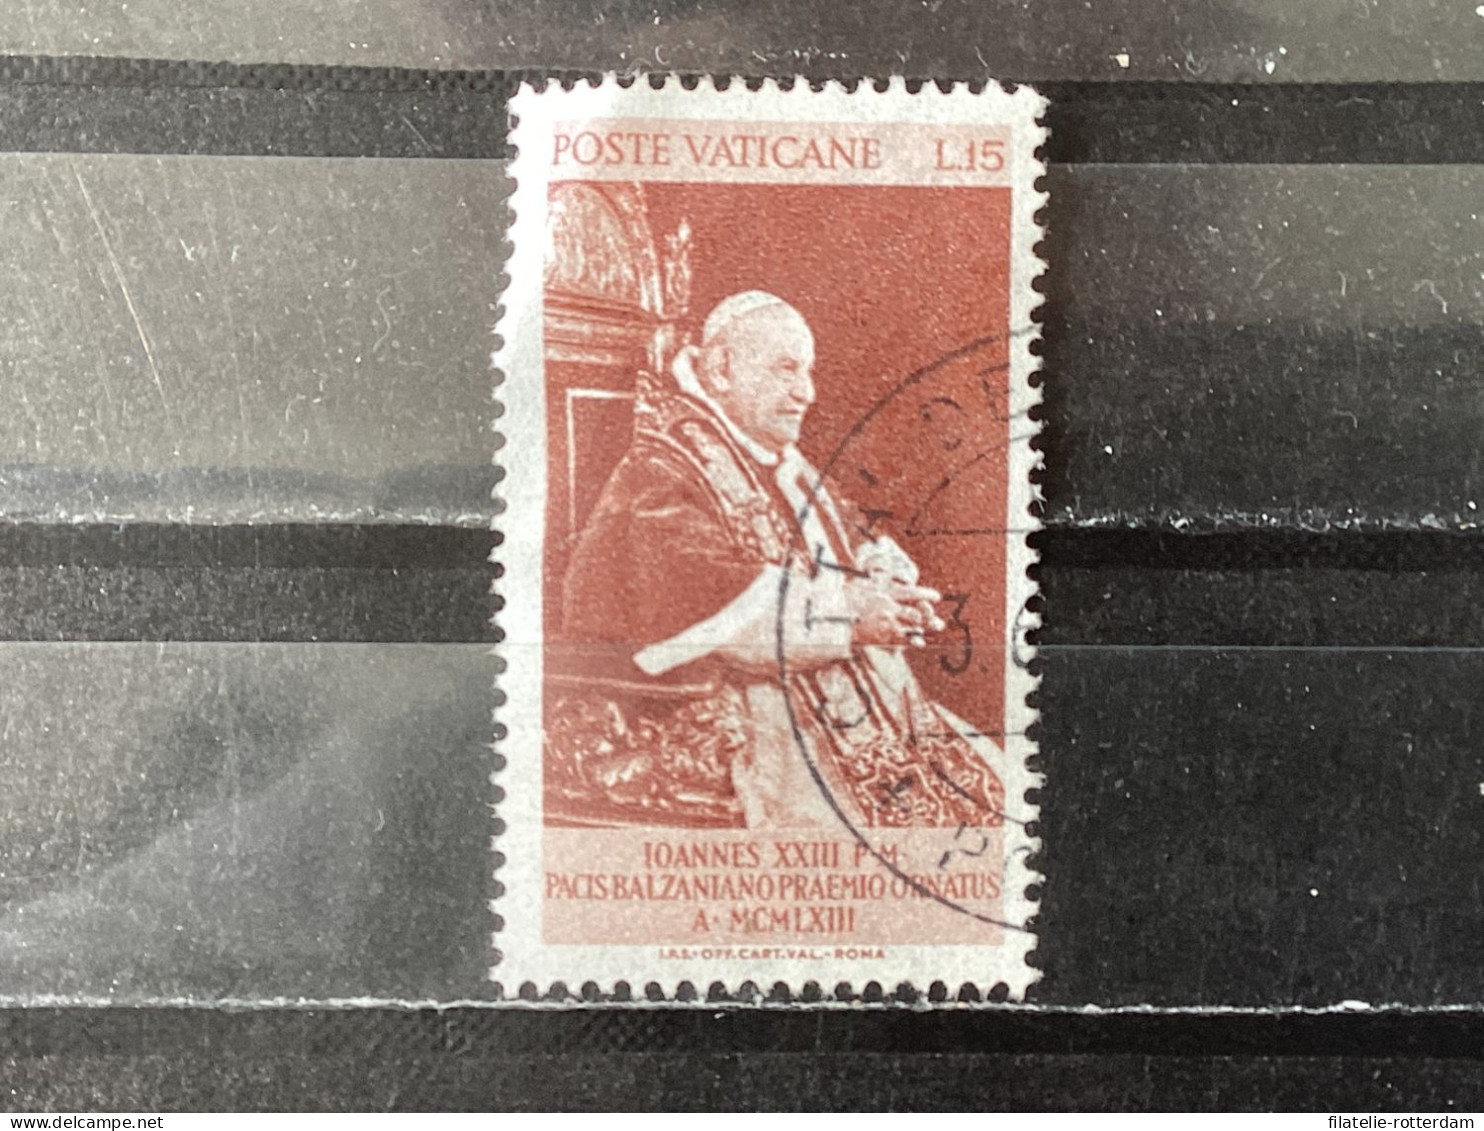 Vatican City / Vaticaanstad - Balzan Price For Peace (15) 1963 - Used Stamps